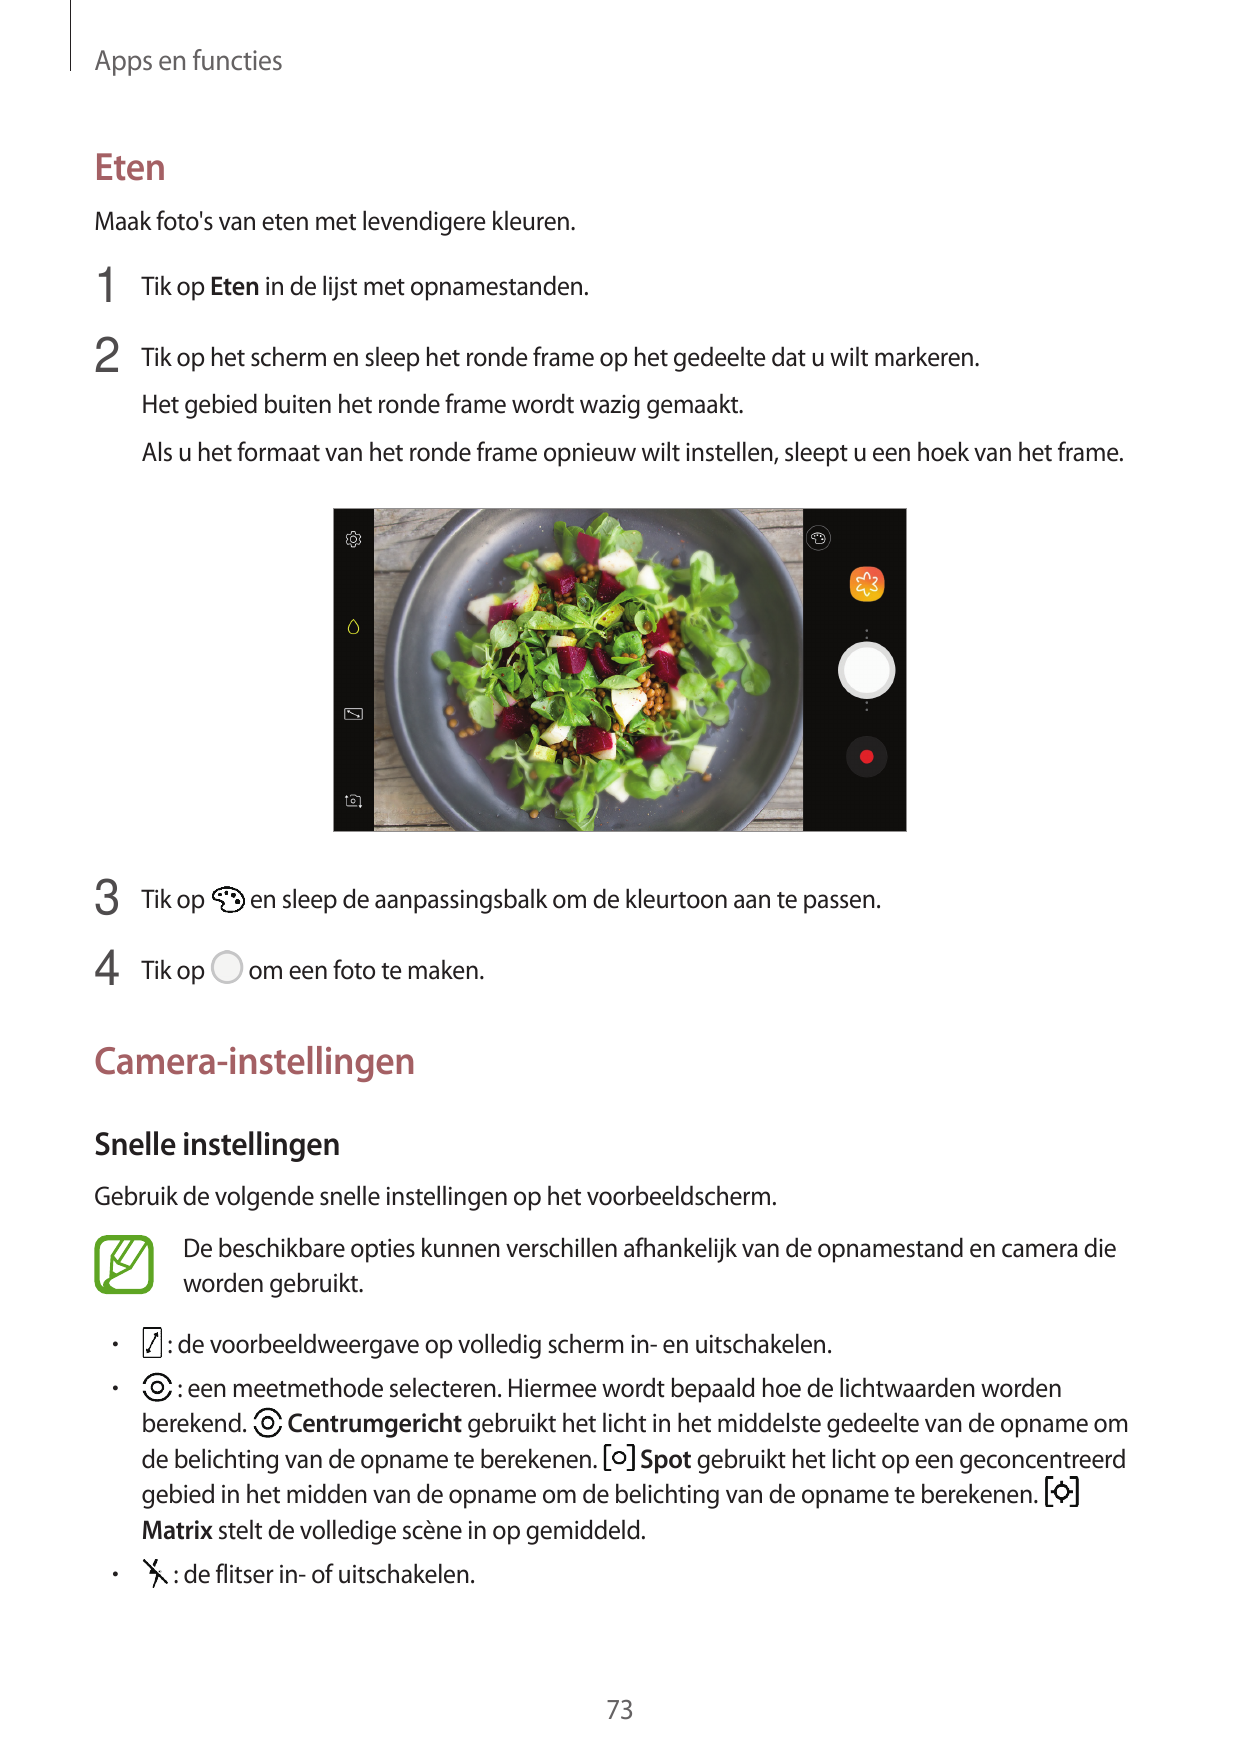 Apps en functiesEtenMaak foto's van eten met levendigere kleuren.1 Tik op Eten in de lijst met opnamestanden.2 Tik op het scherm